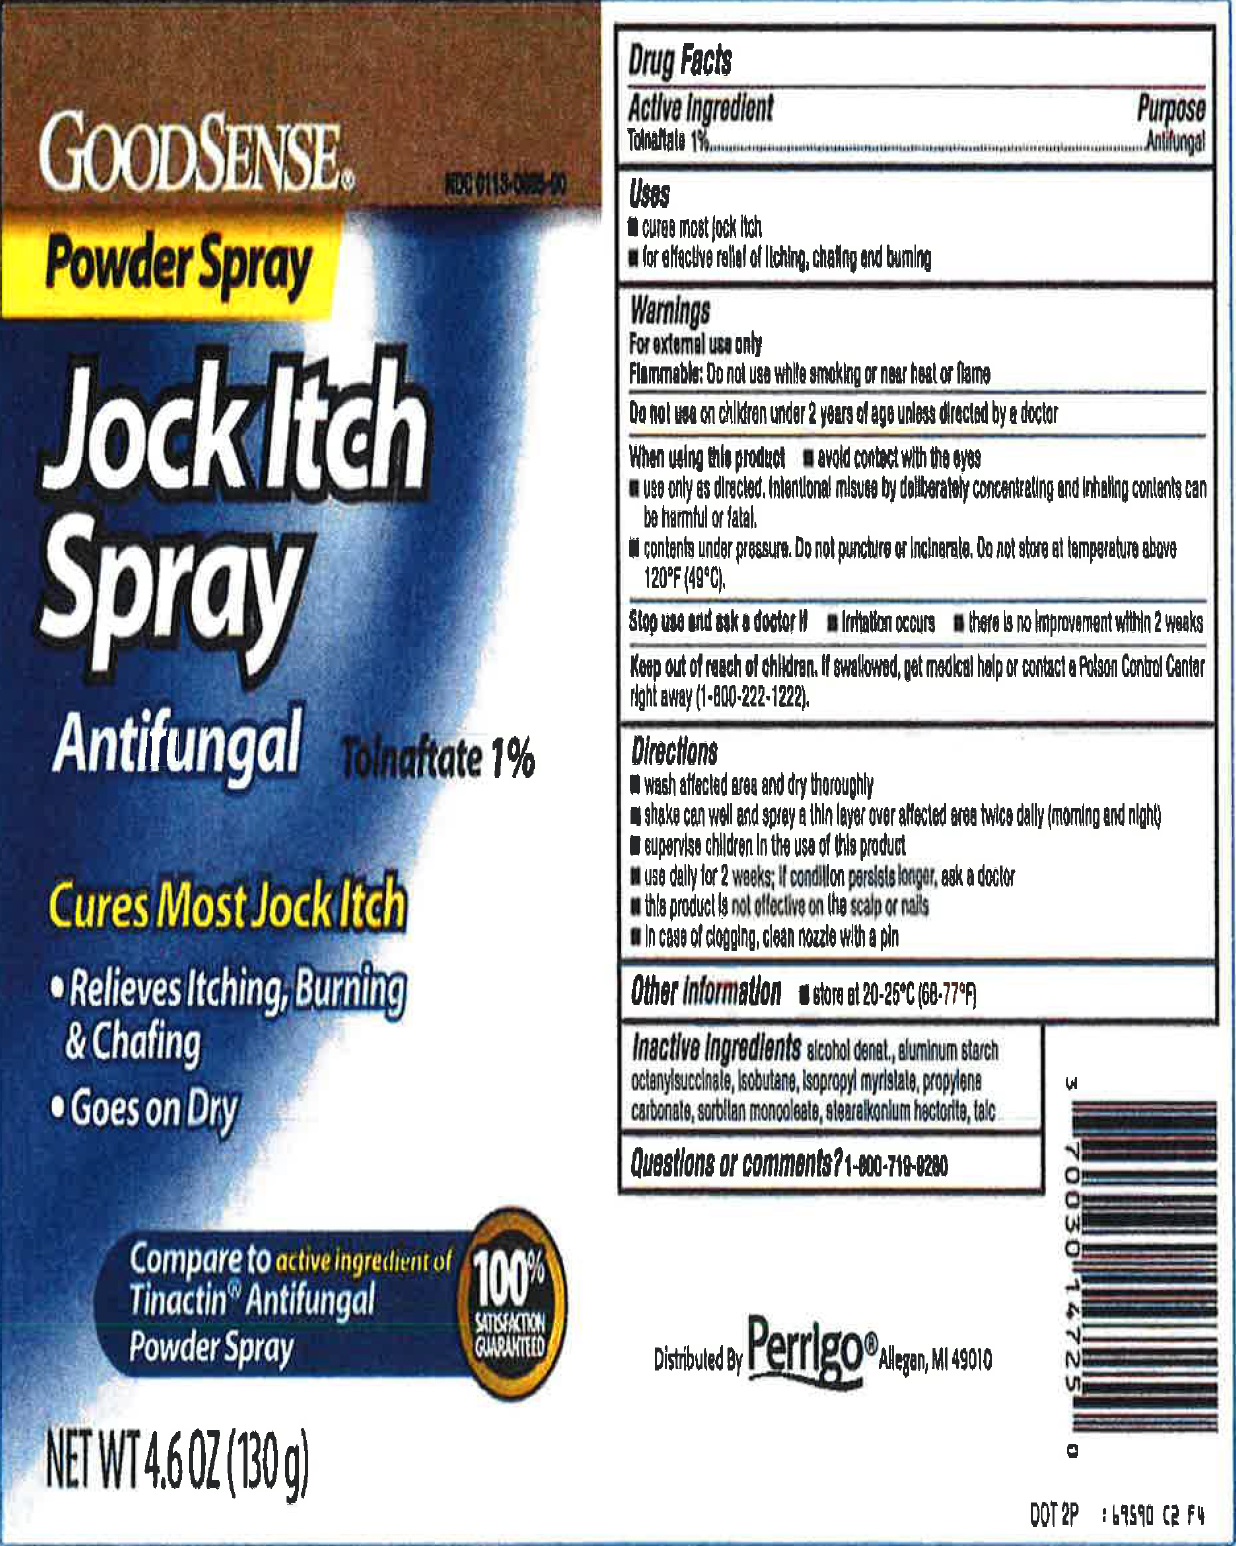 Jock Itch Spray and Powder